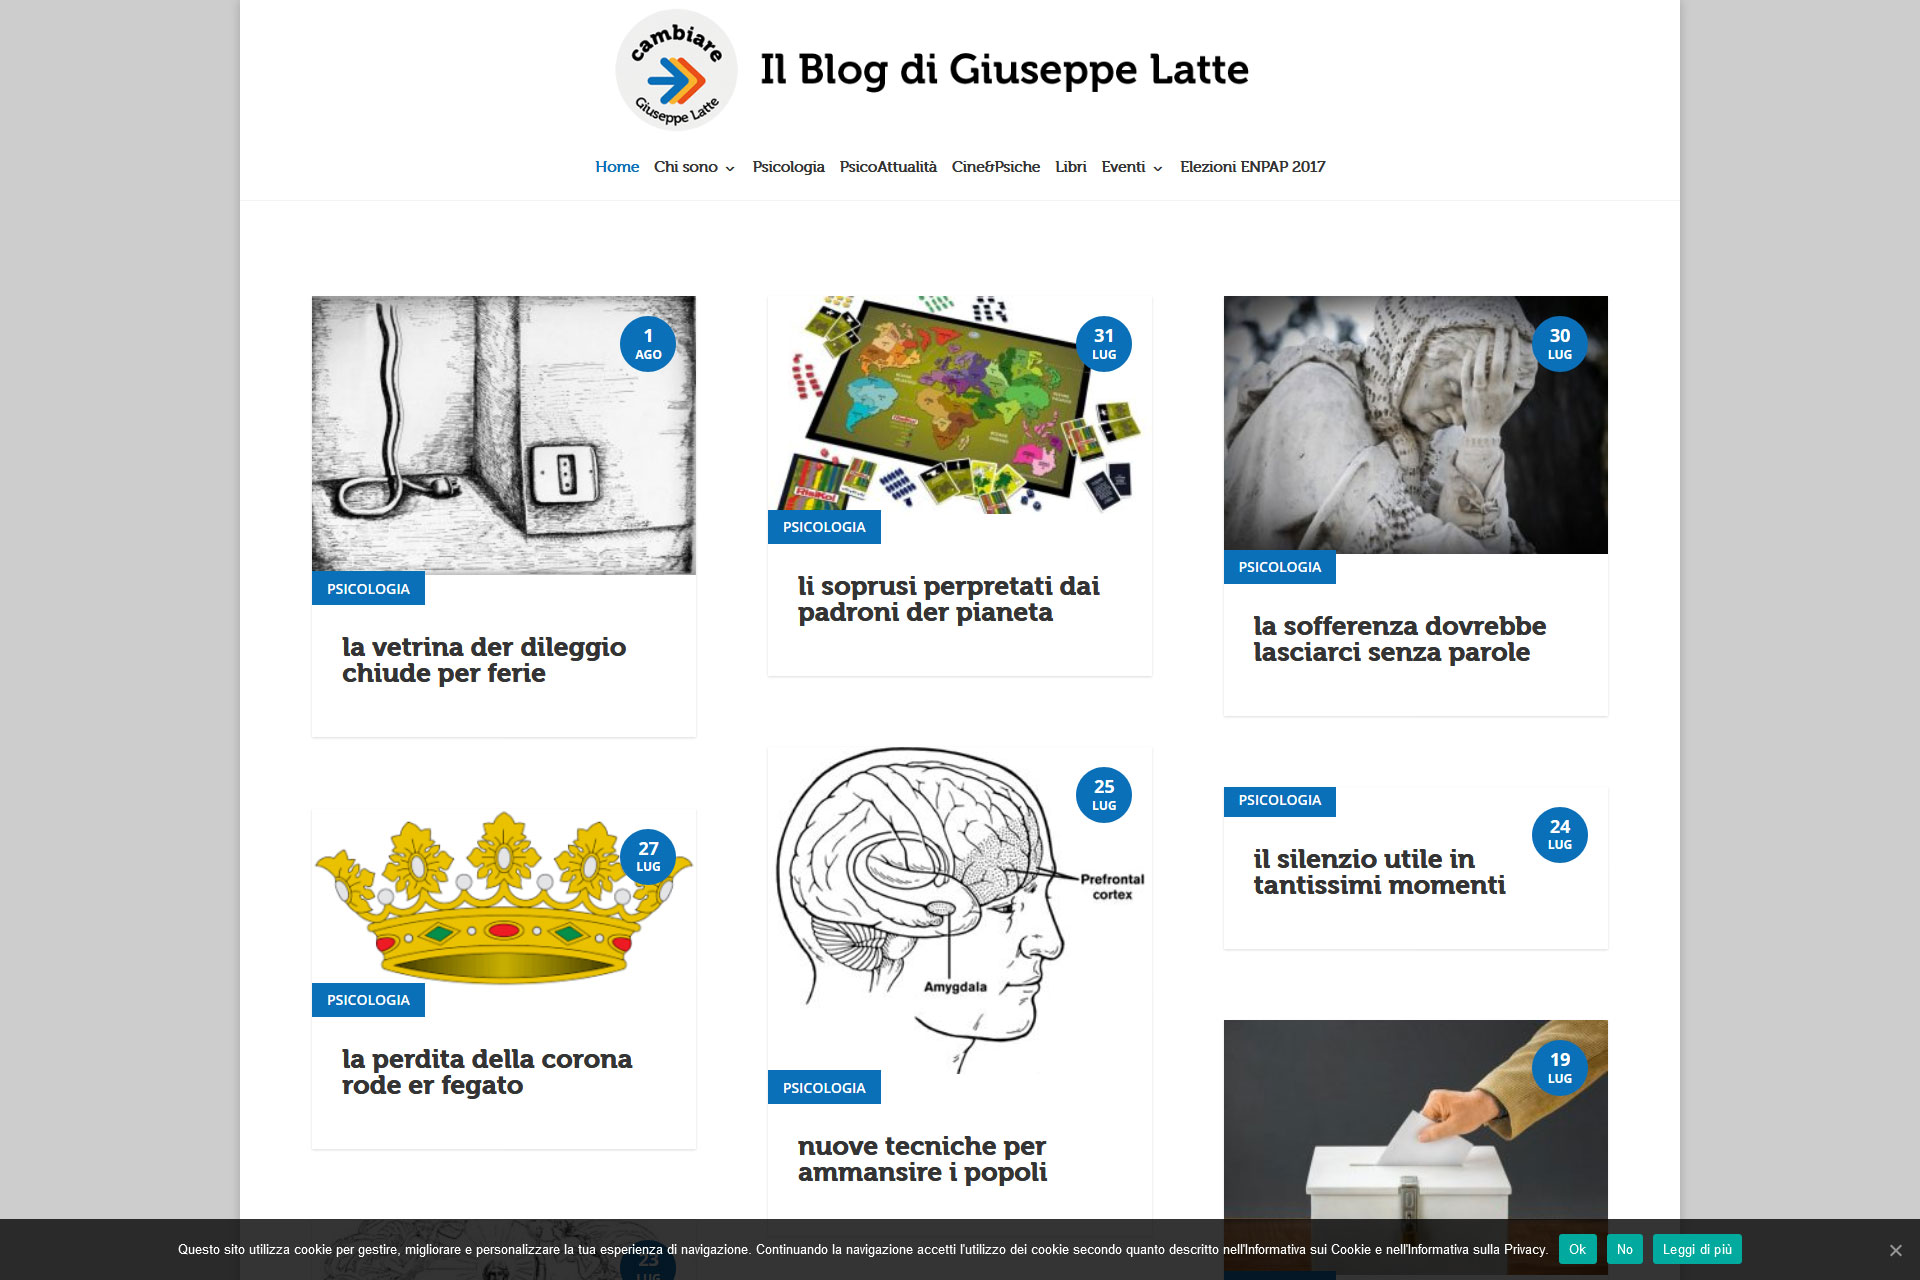 Giuseppe Latte Blog